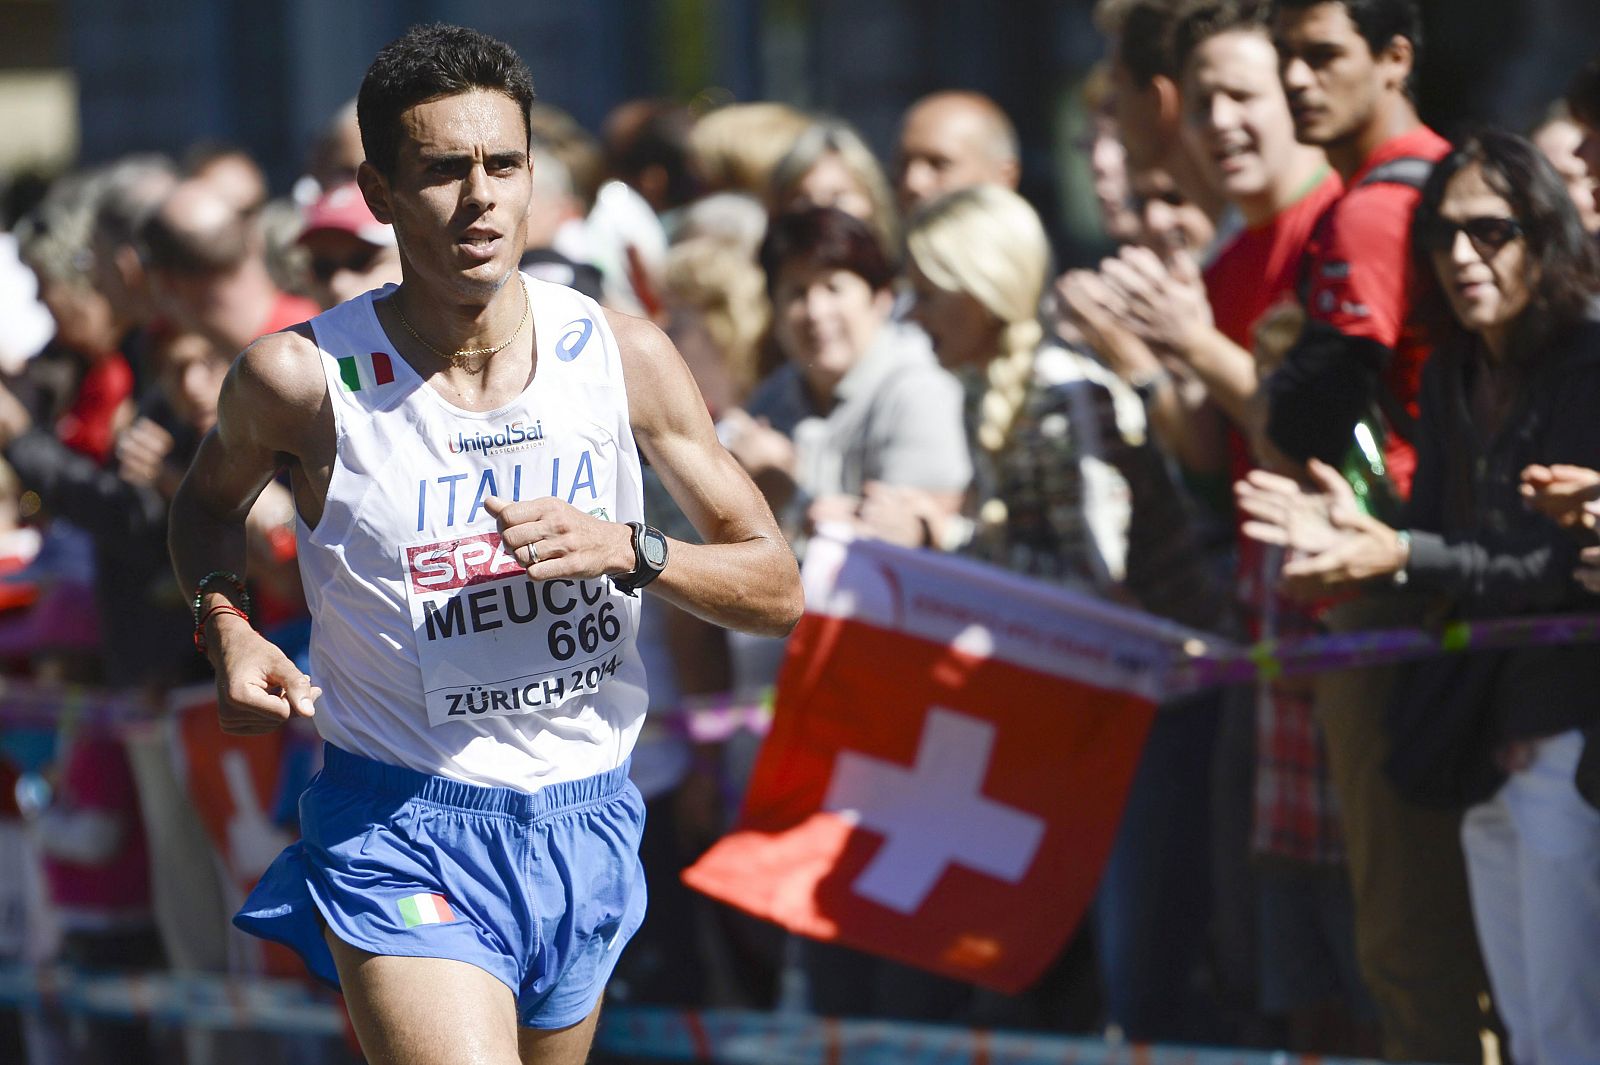 El corredor italiano Daniele Meucci se ha impuesto en la maratón.